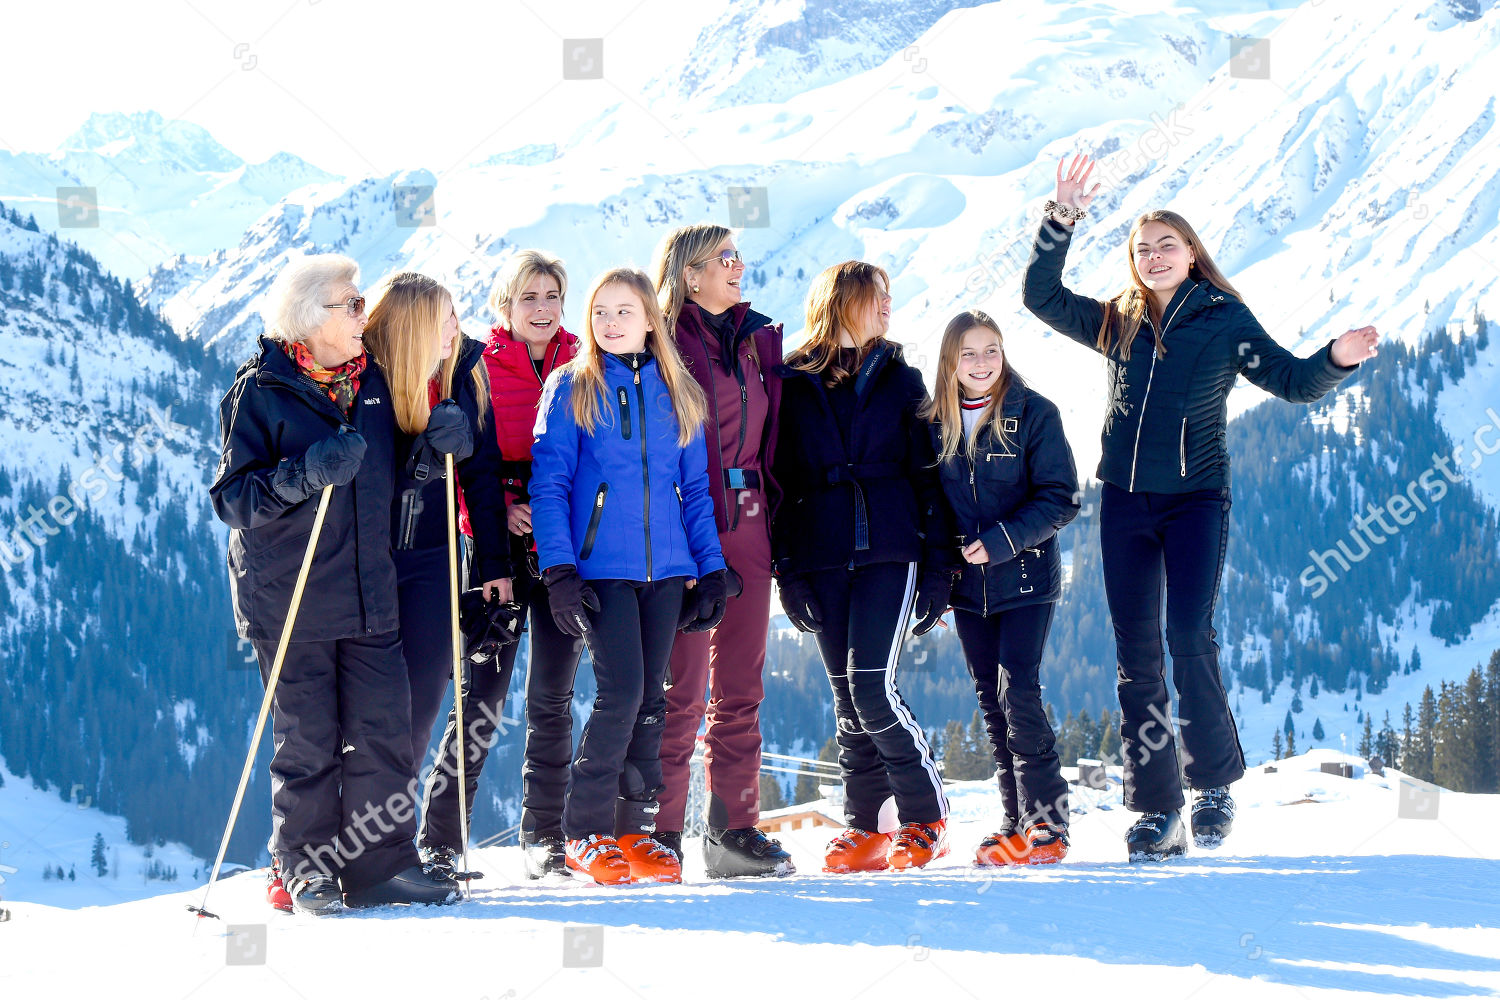 dutch-royals-winter-holiday-photocall-lech-austria-shutterstock-editorial-10118946l.jpg